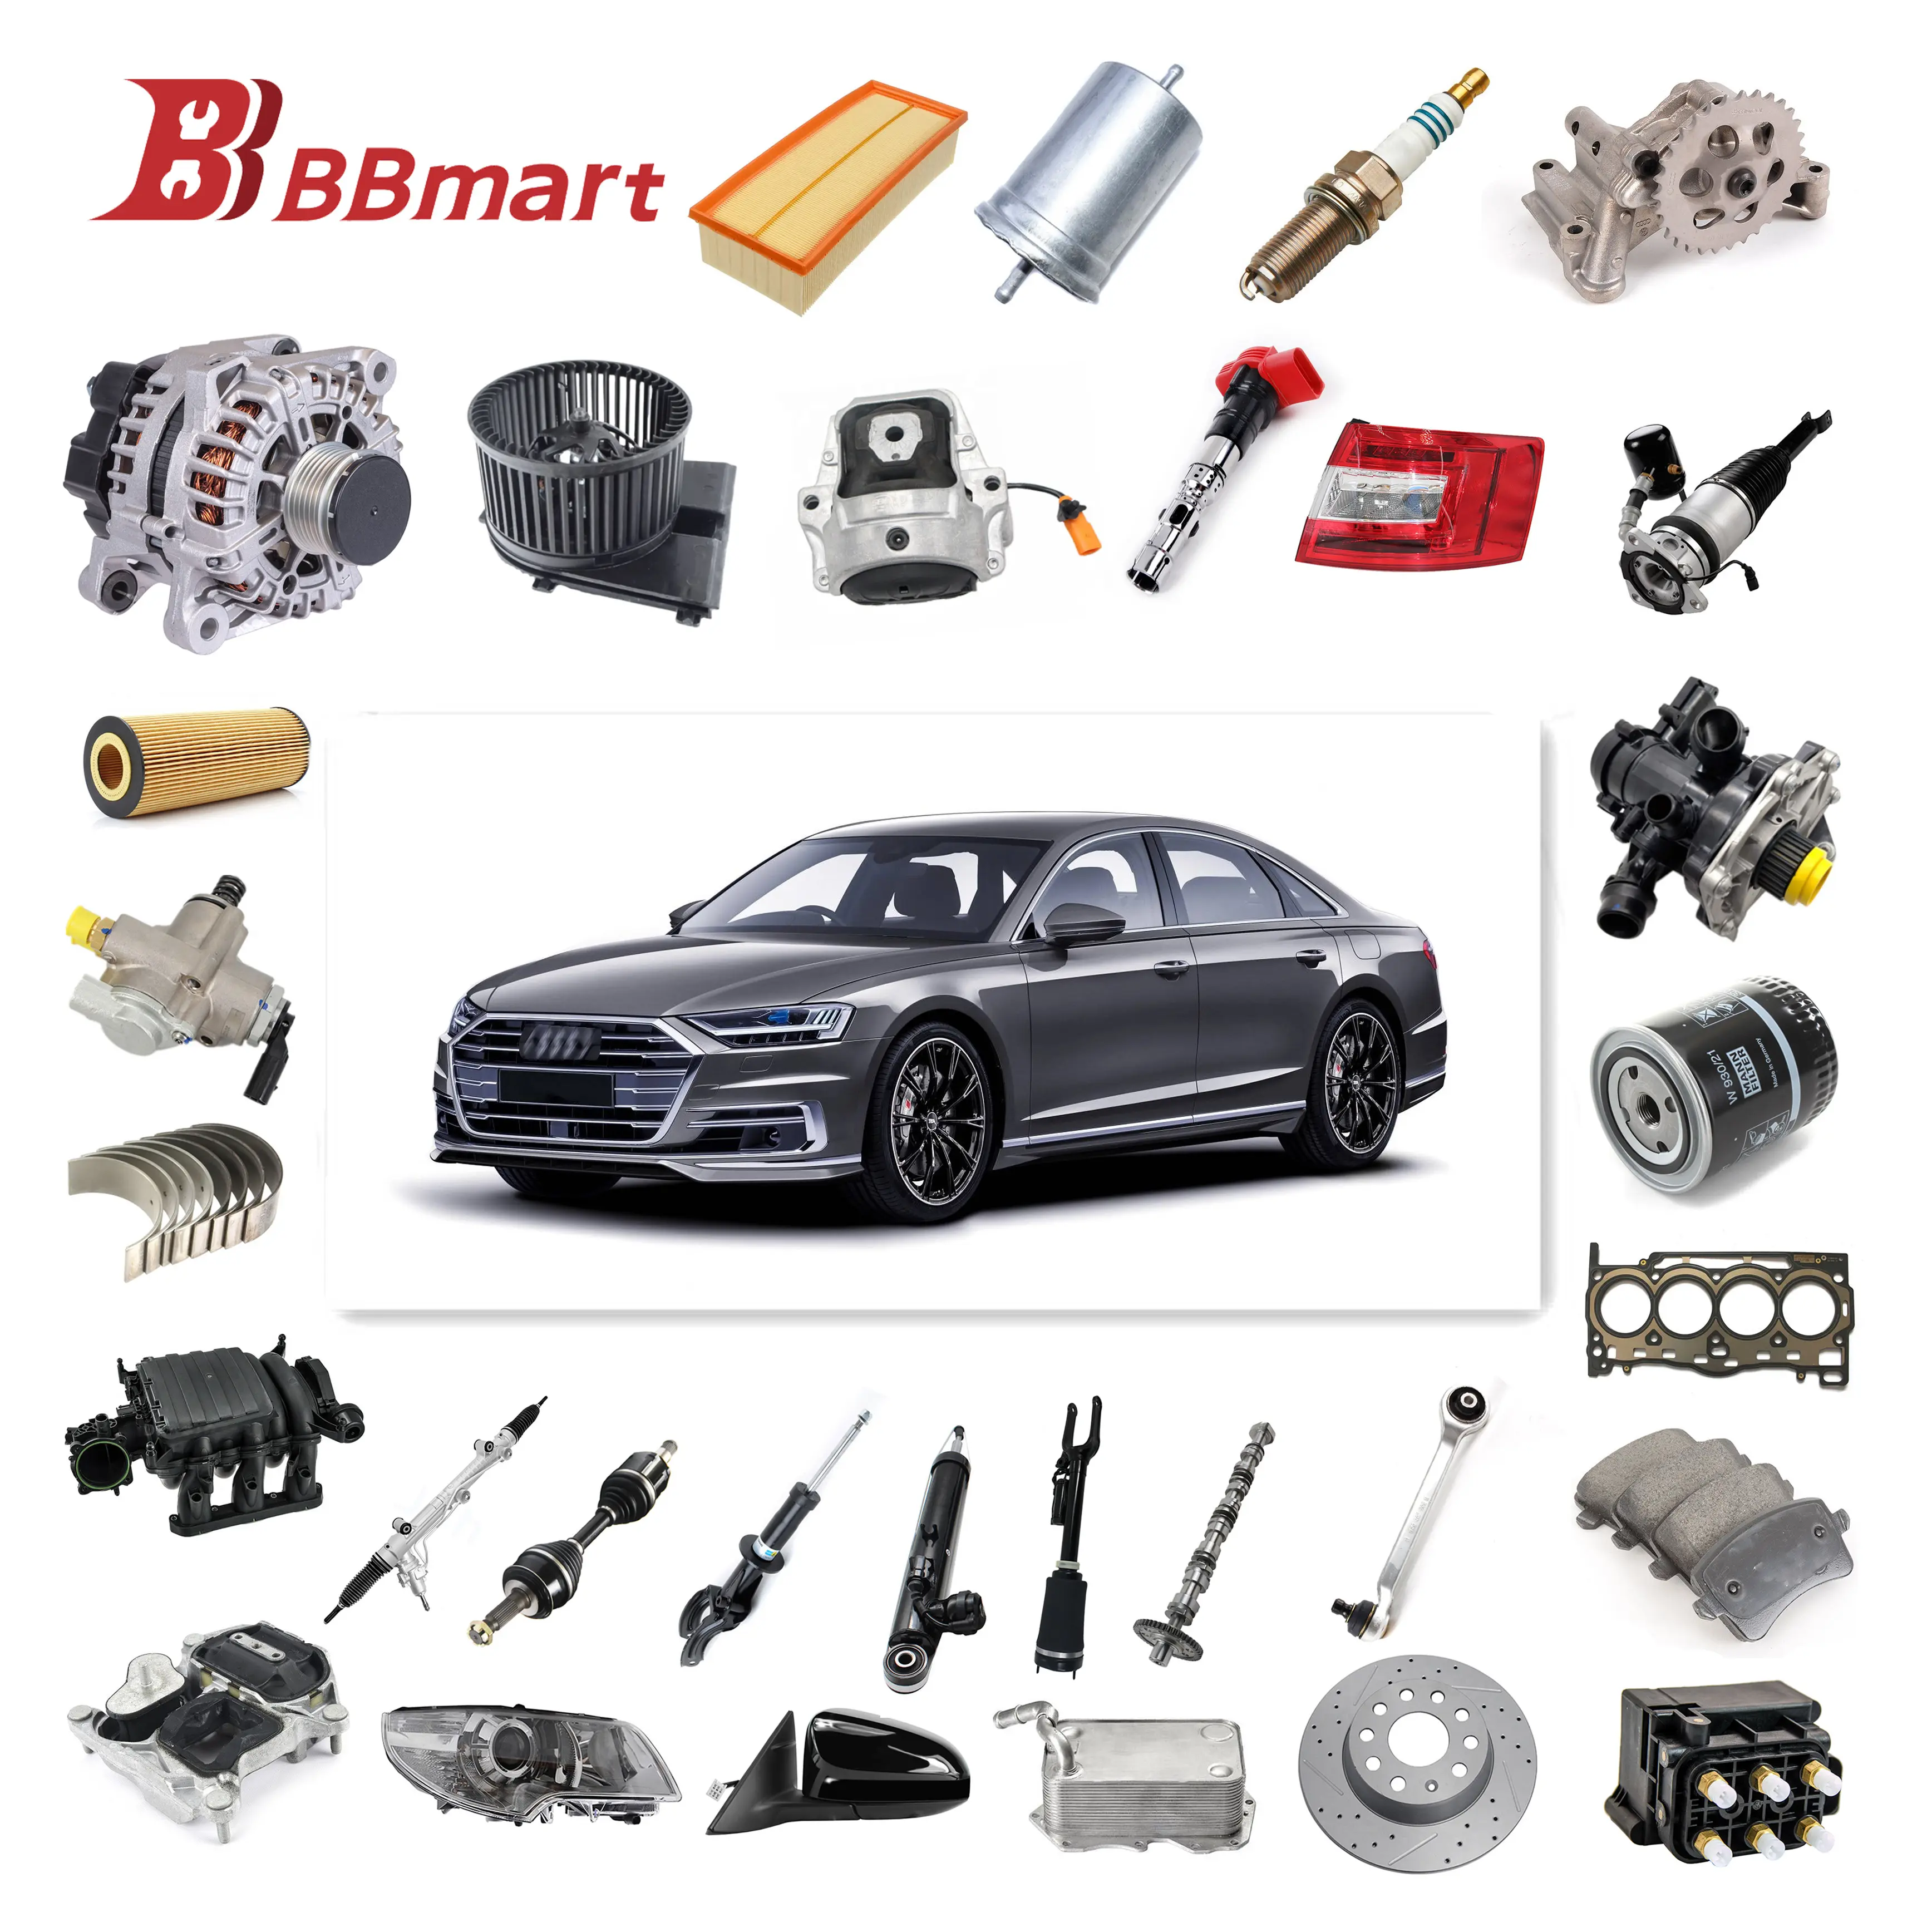 Bbmart oto yedek araba parçaları otomotiv motor parçaları diğer oto yedek araba parçaları Audi sıcak satış modeli A3 A4 A5 A6 Vw için tüm modeller